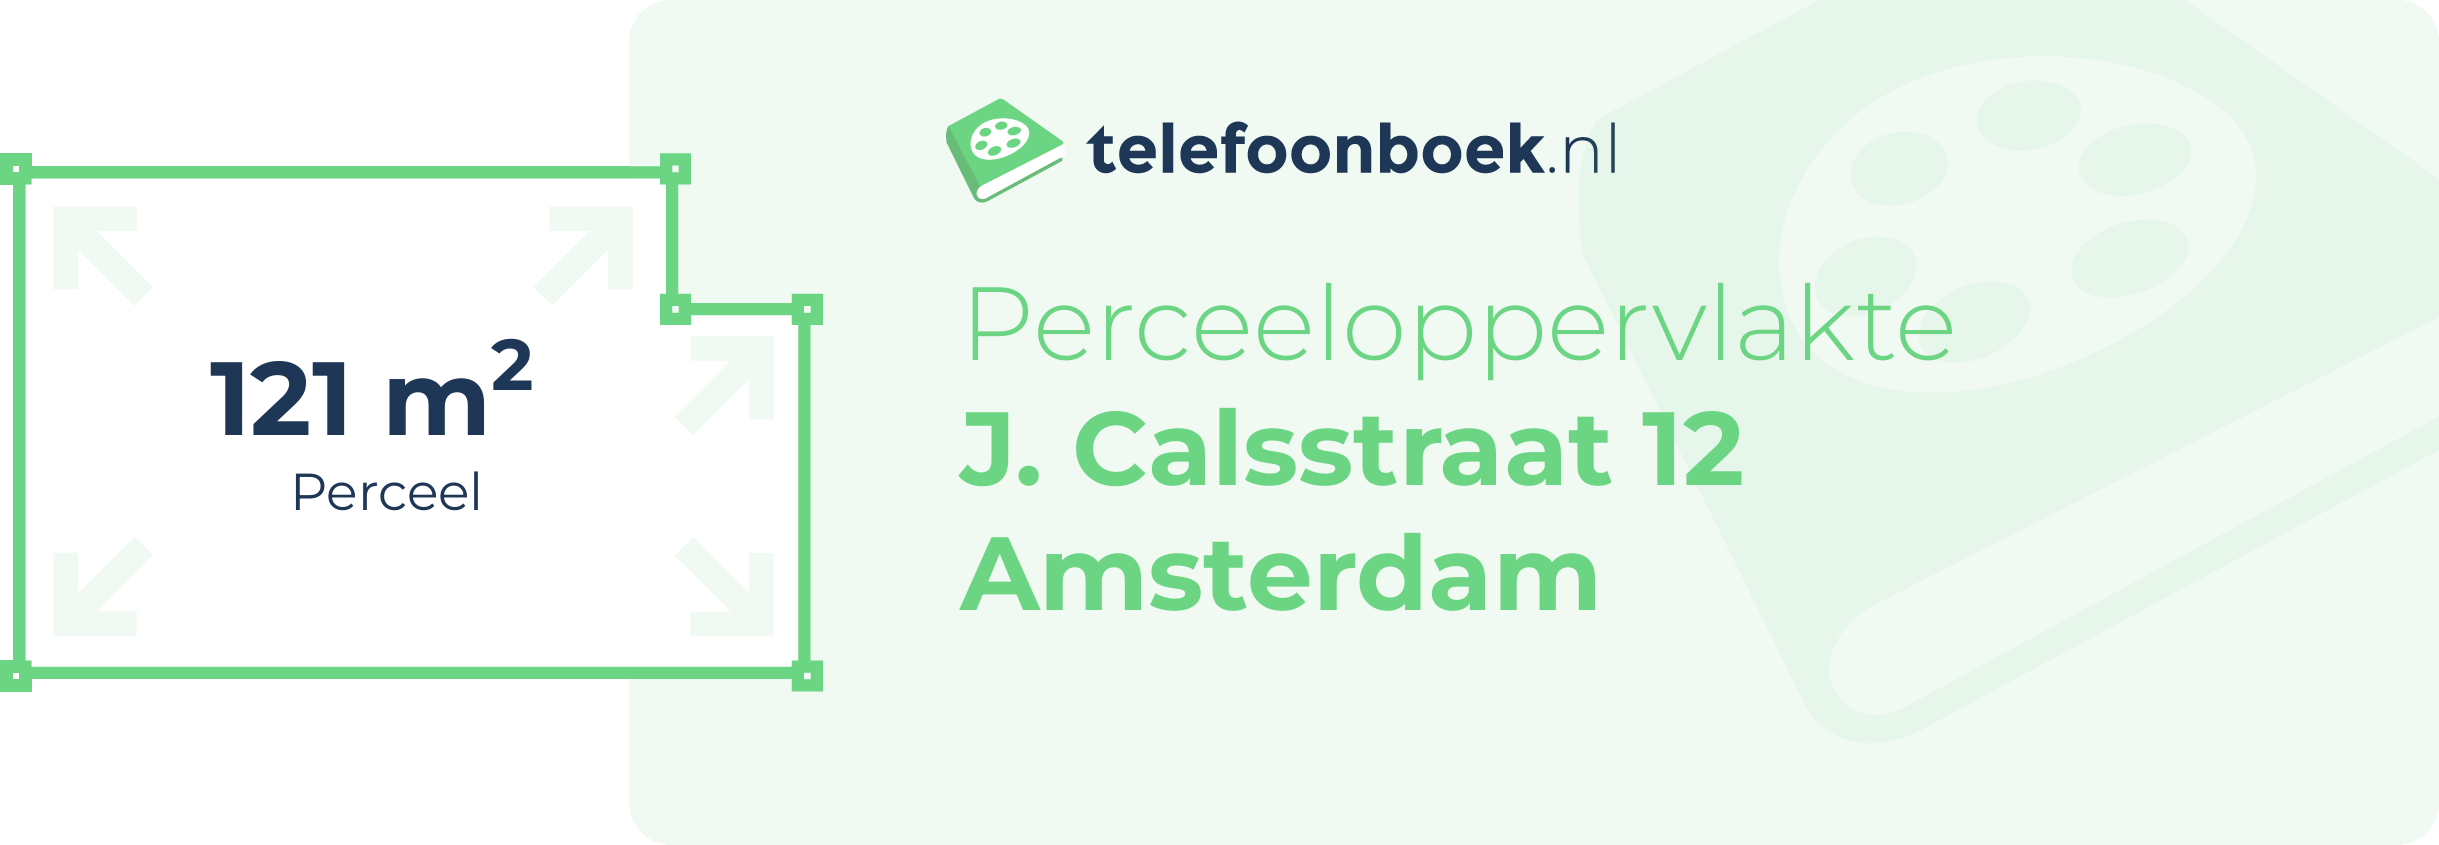 Perceeloppervlakte J. Calsstraat 12 Amsterdam